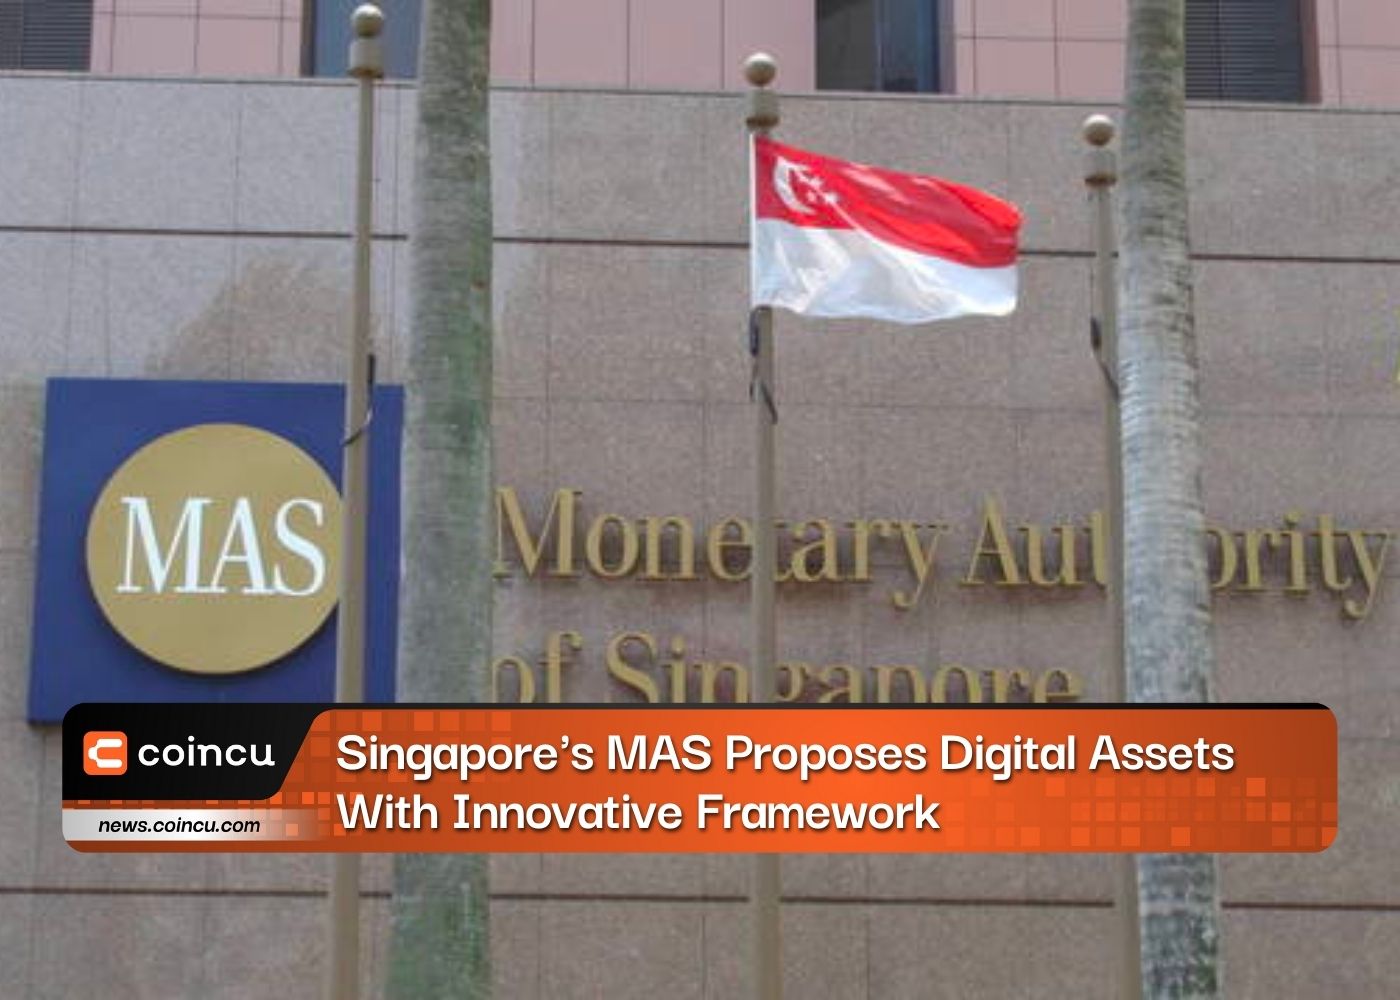 싱가포르의 MAS, 혁신적인 프레임워크로 디지털 자산 제안